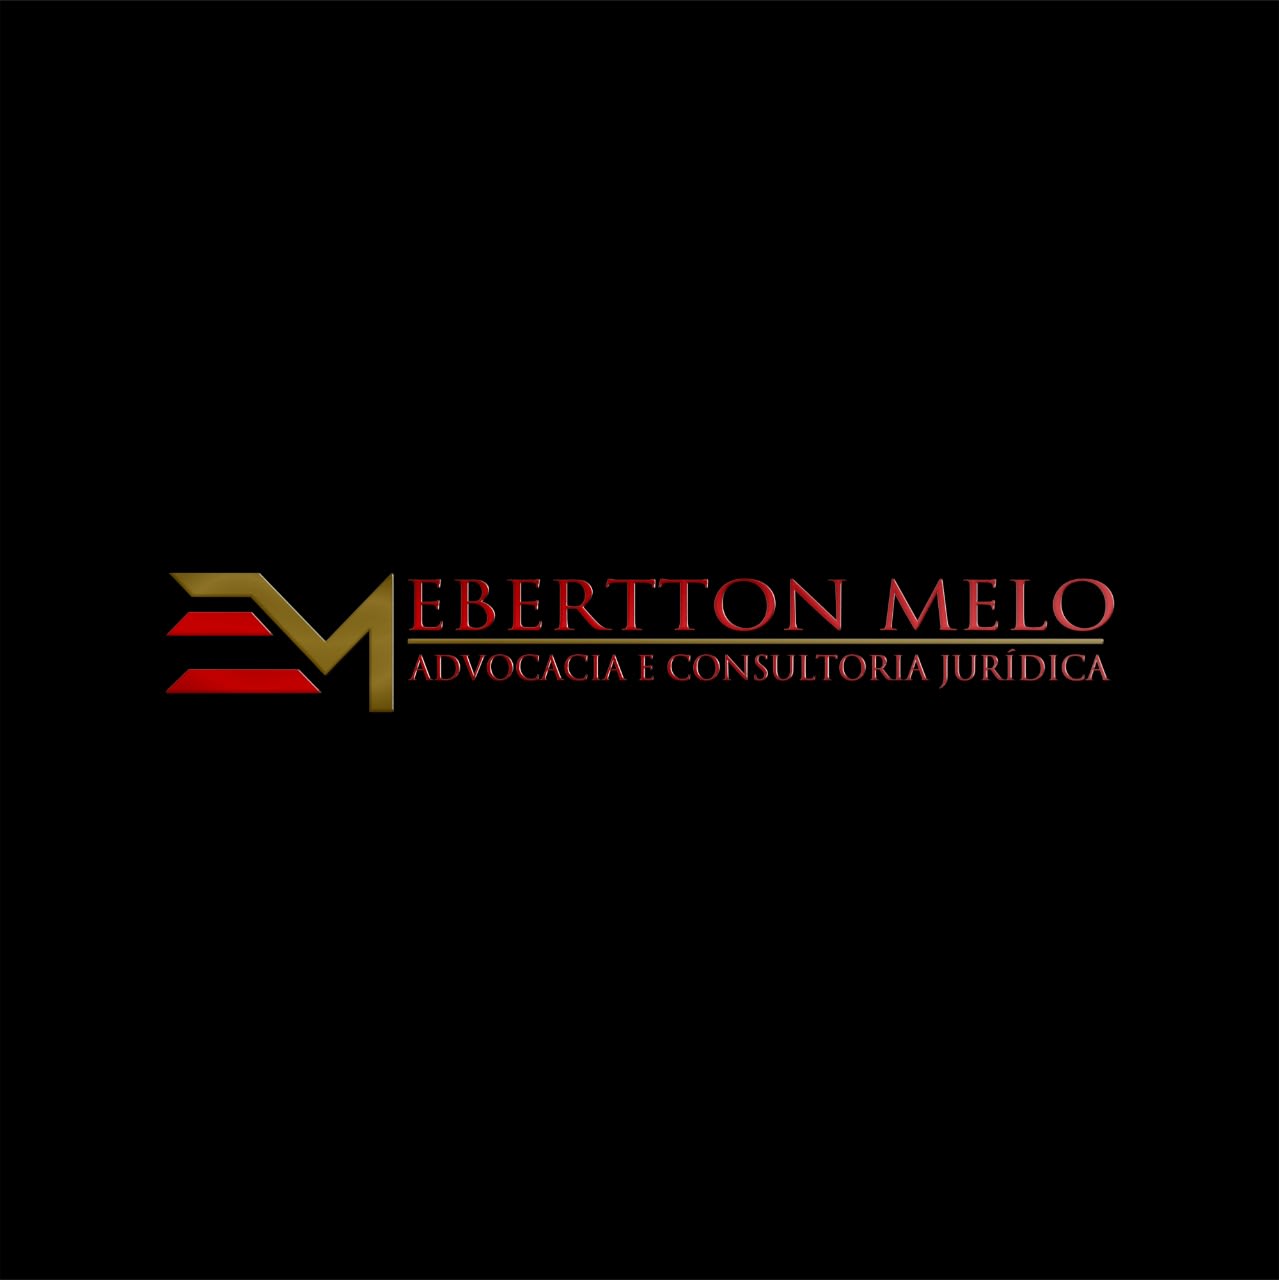 Ebertton Melo Advocacia & Consultoria Jurídica